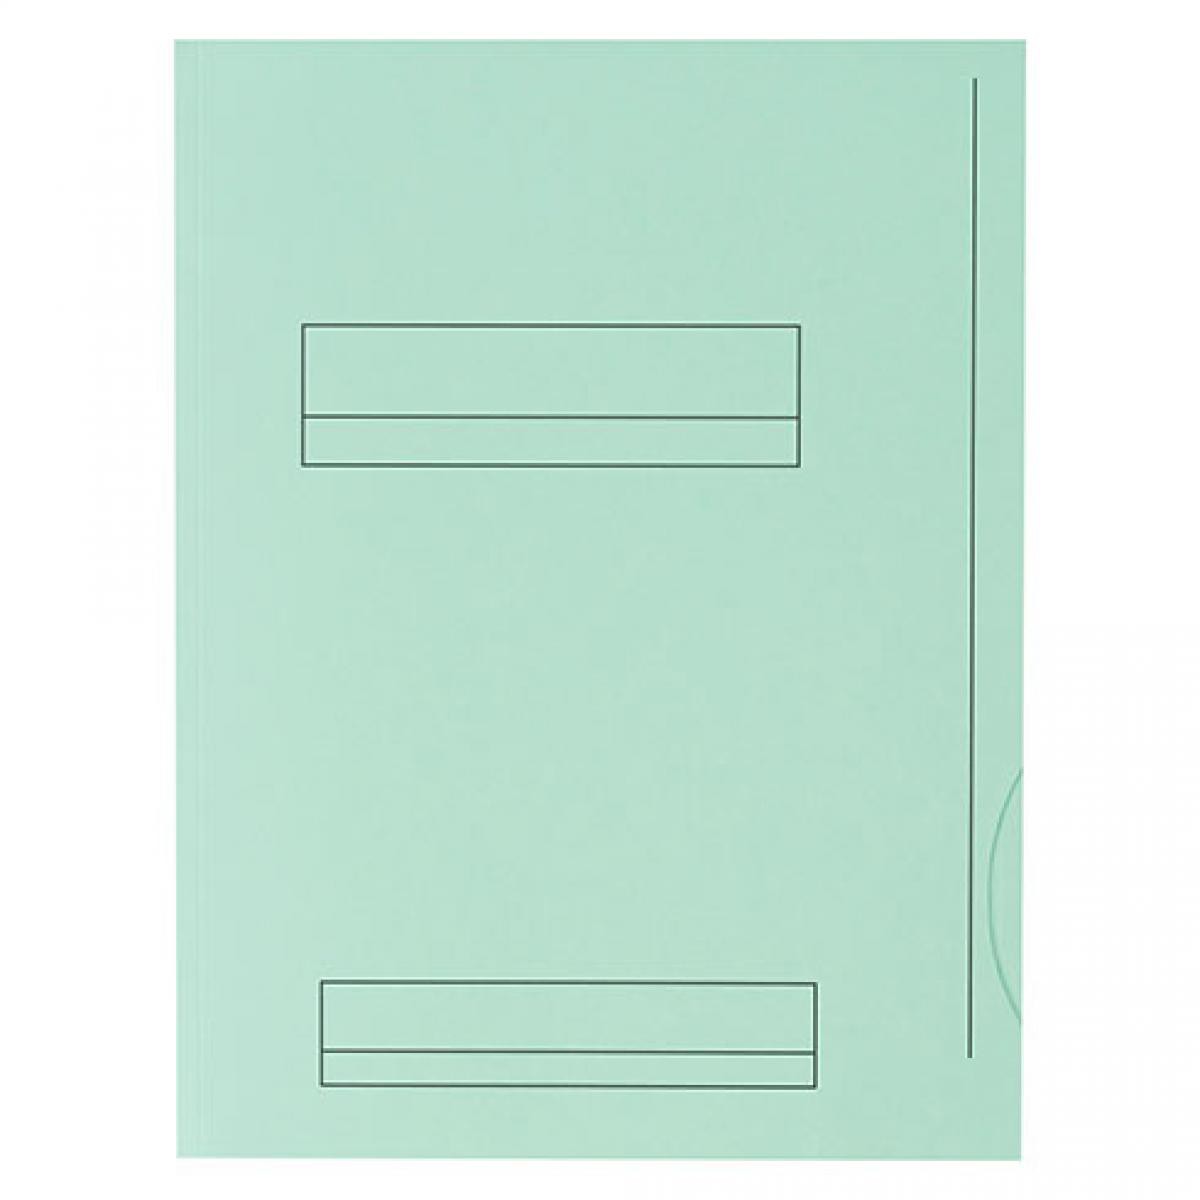 Oxford - Chemises dossier 2 rabats Fast 24 x 32 cm vert pastel - Paquet de 50 - Accessoires Bureau